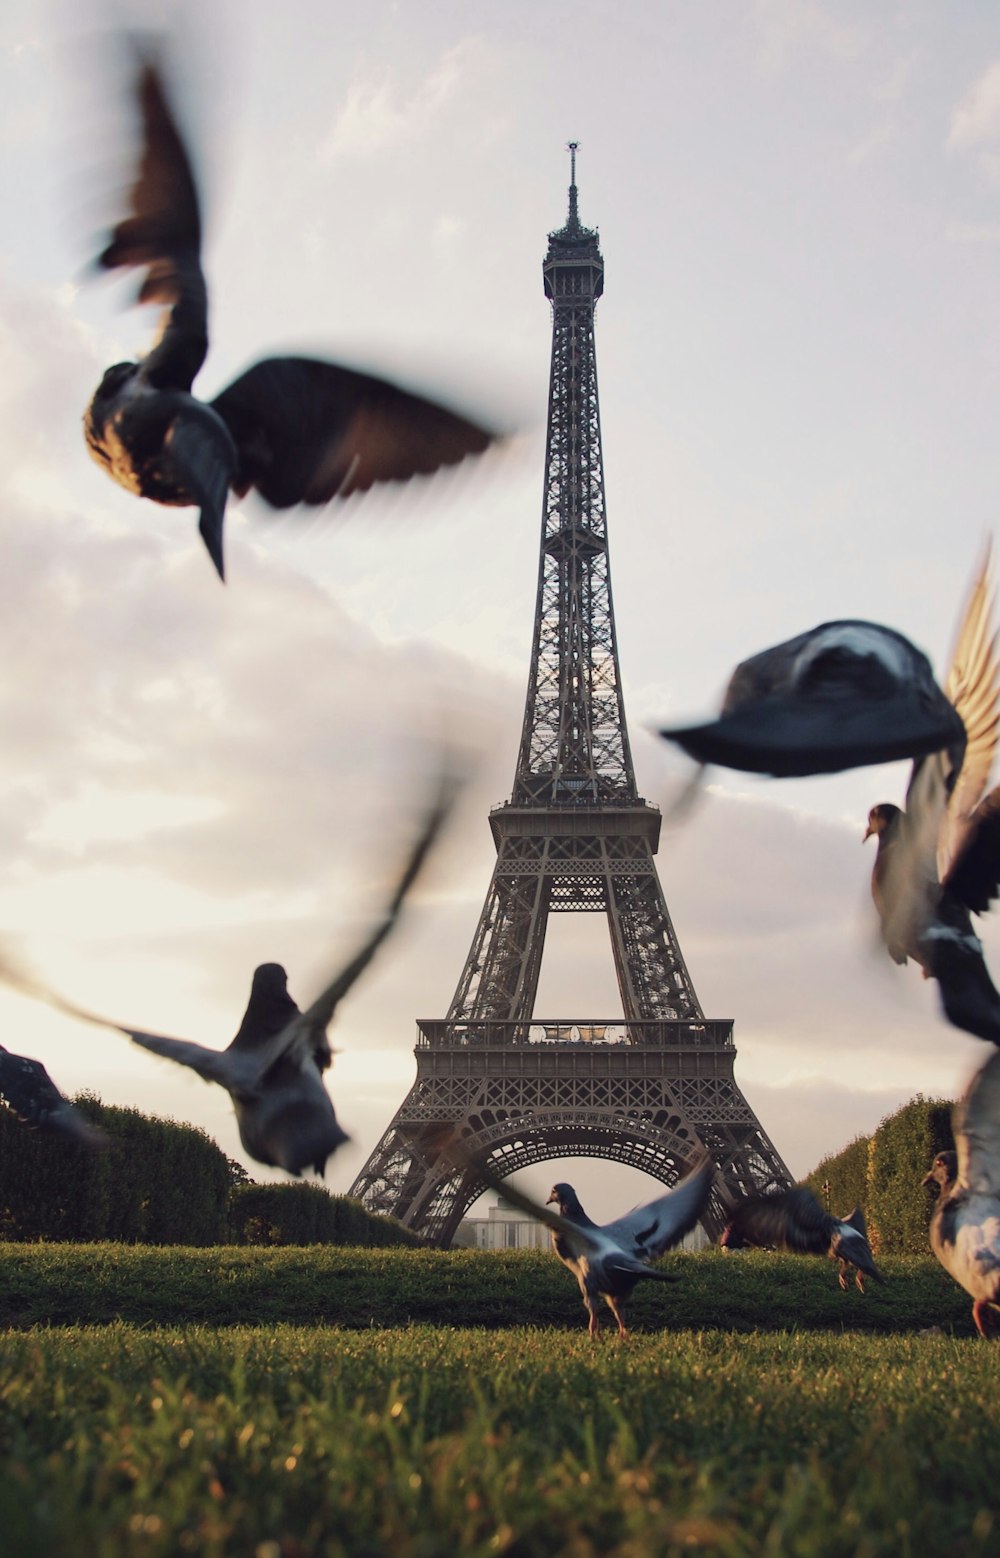 Flug von Tauben, die über eine Wiese in der Nähe des Eiffelturms in Paris fliegen